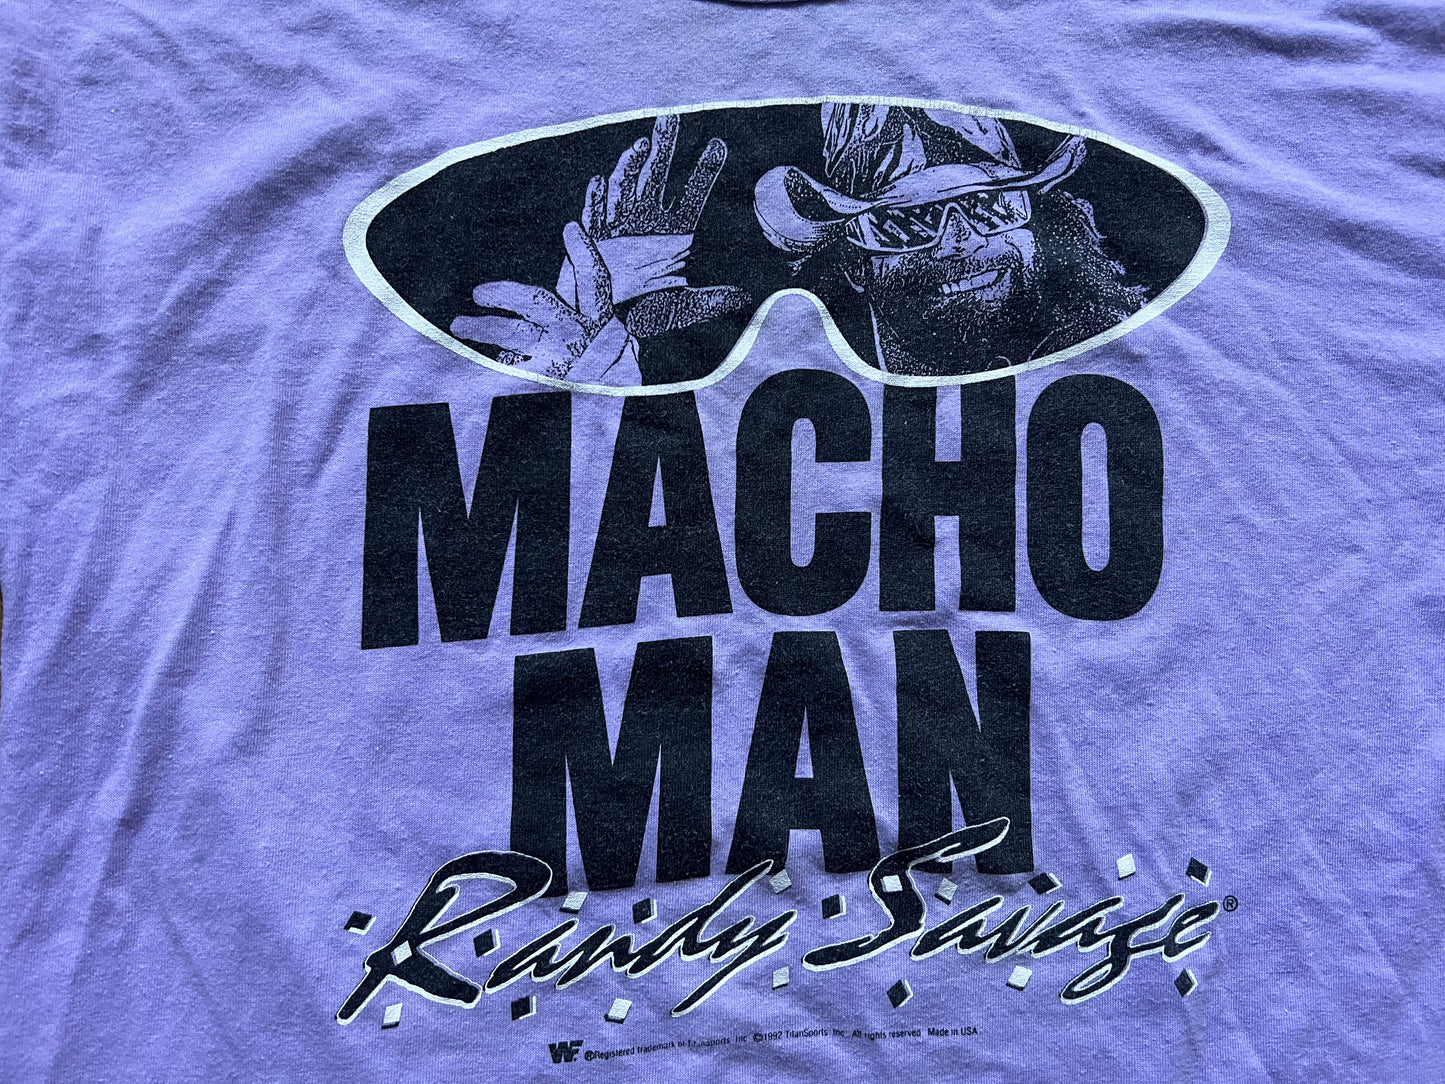 1992 WWF “Macho Man” Randy Savage shirt